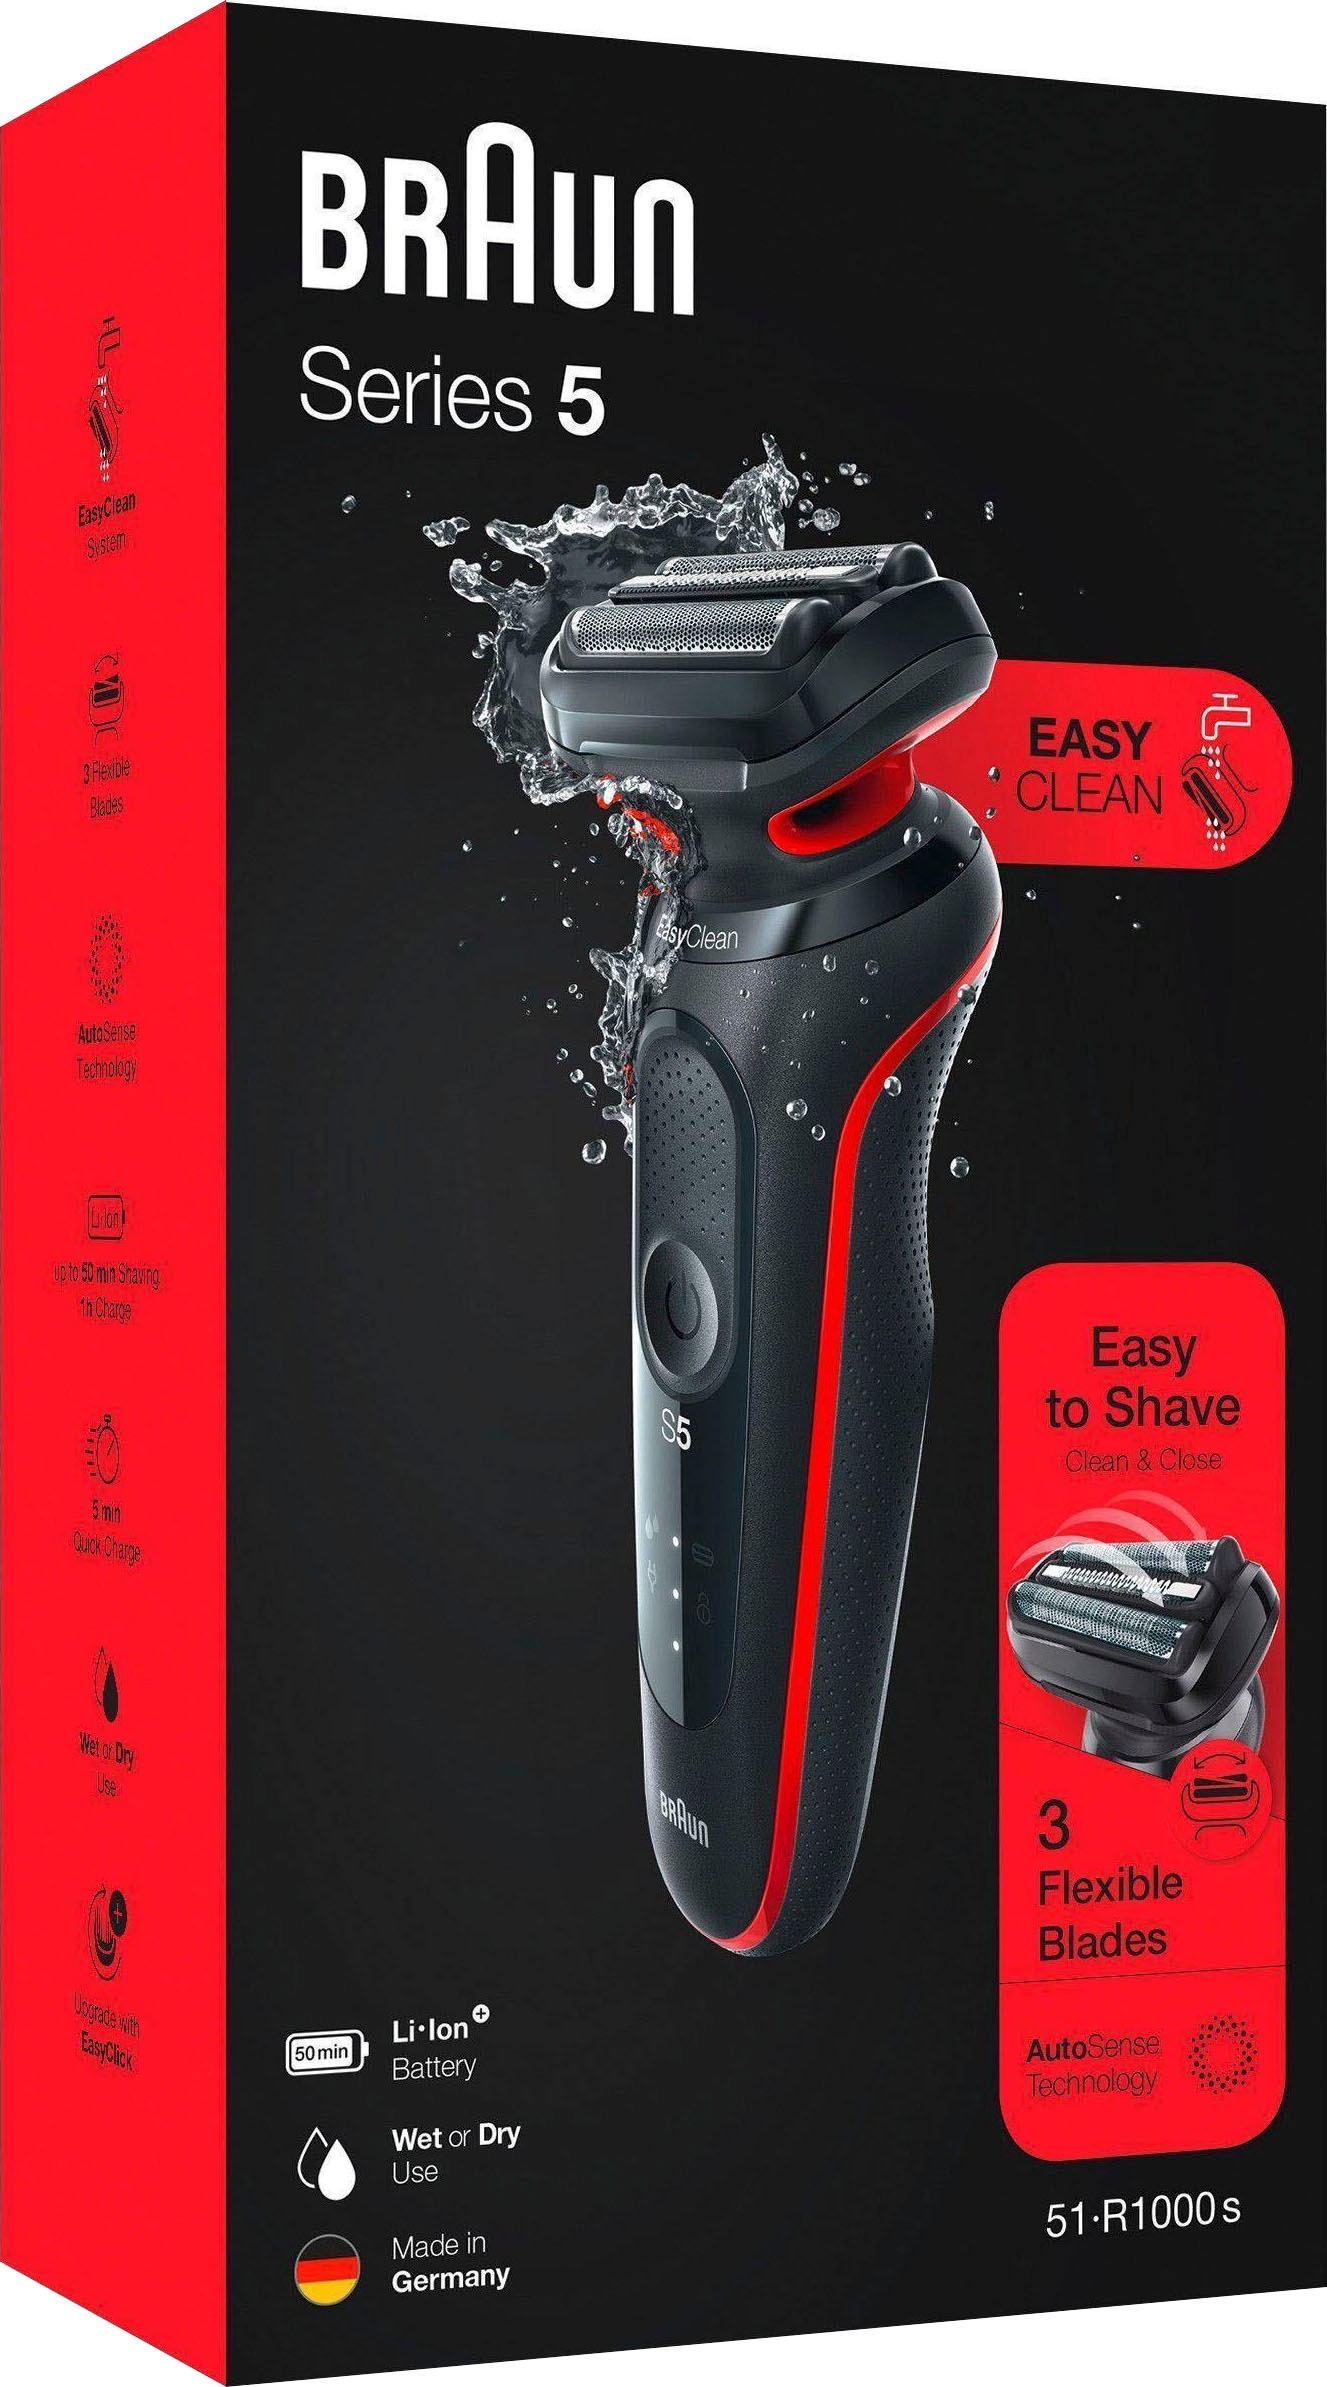 Braun Elektrorasierer »Series 5 51-R1000s«, im Online-Shop kaufen EasyClean, Wet&Dry